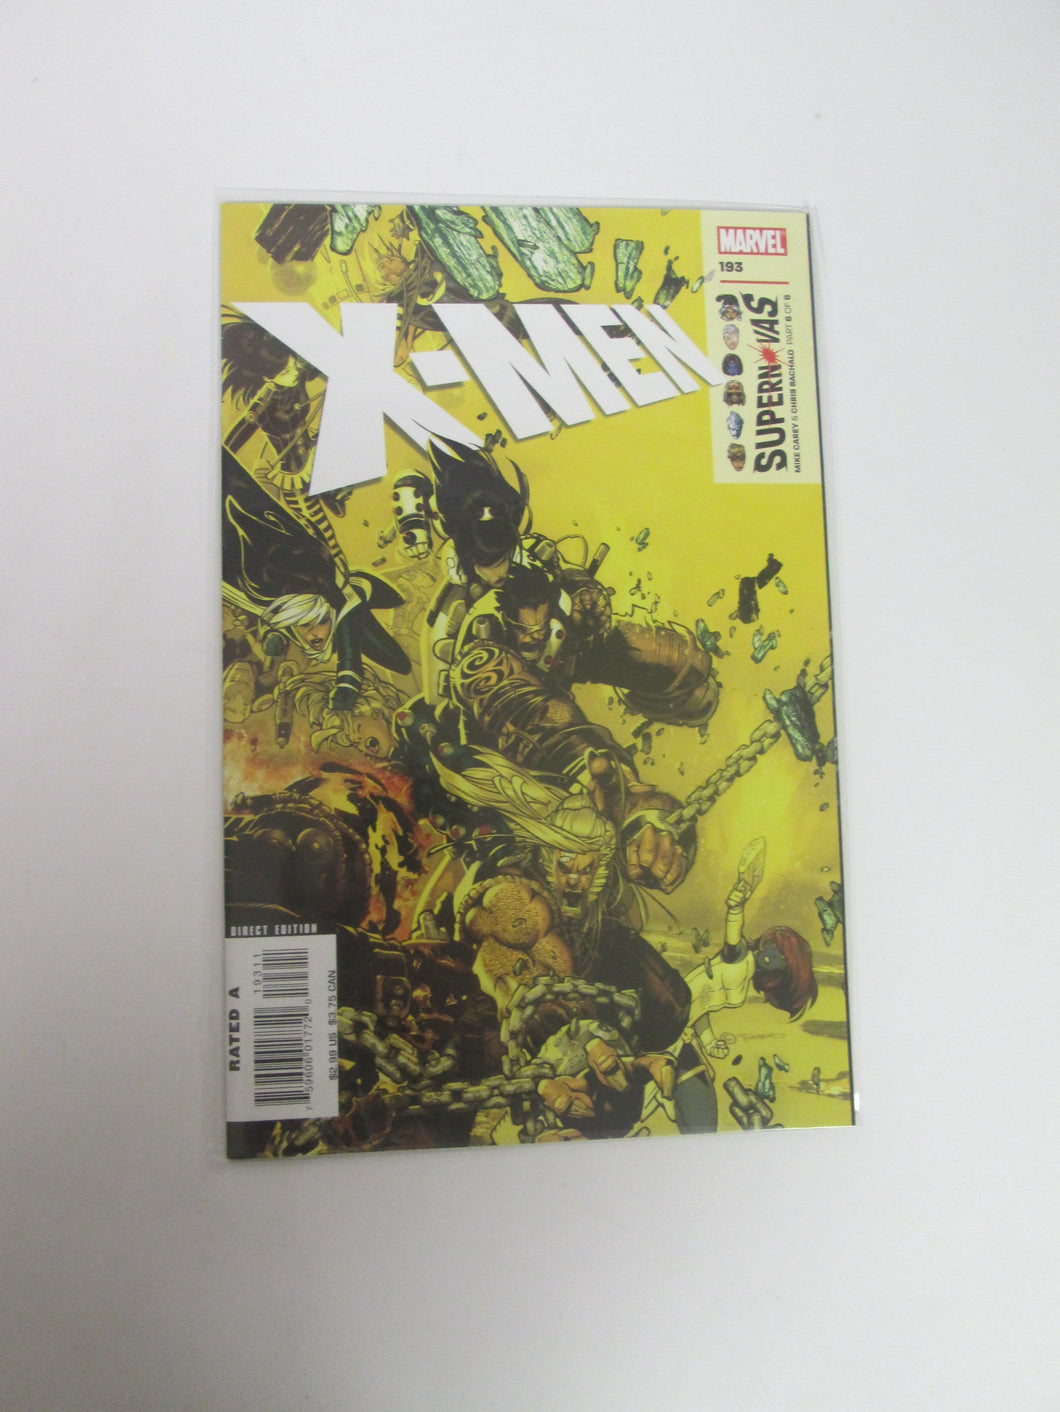 X-Men #193 (Marvel)